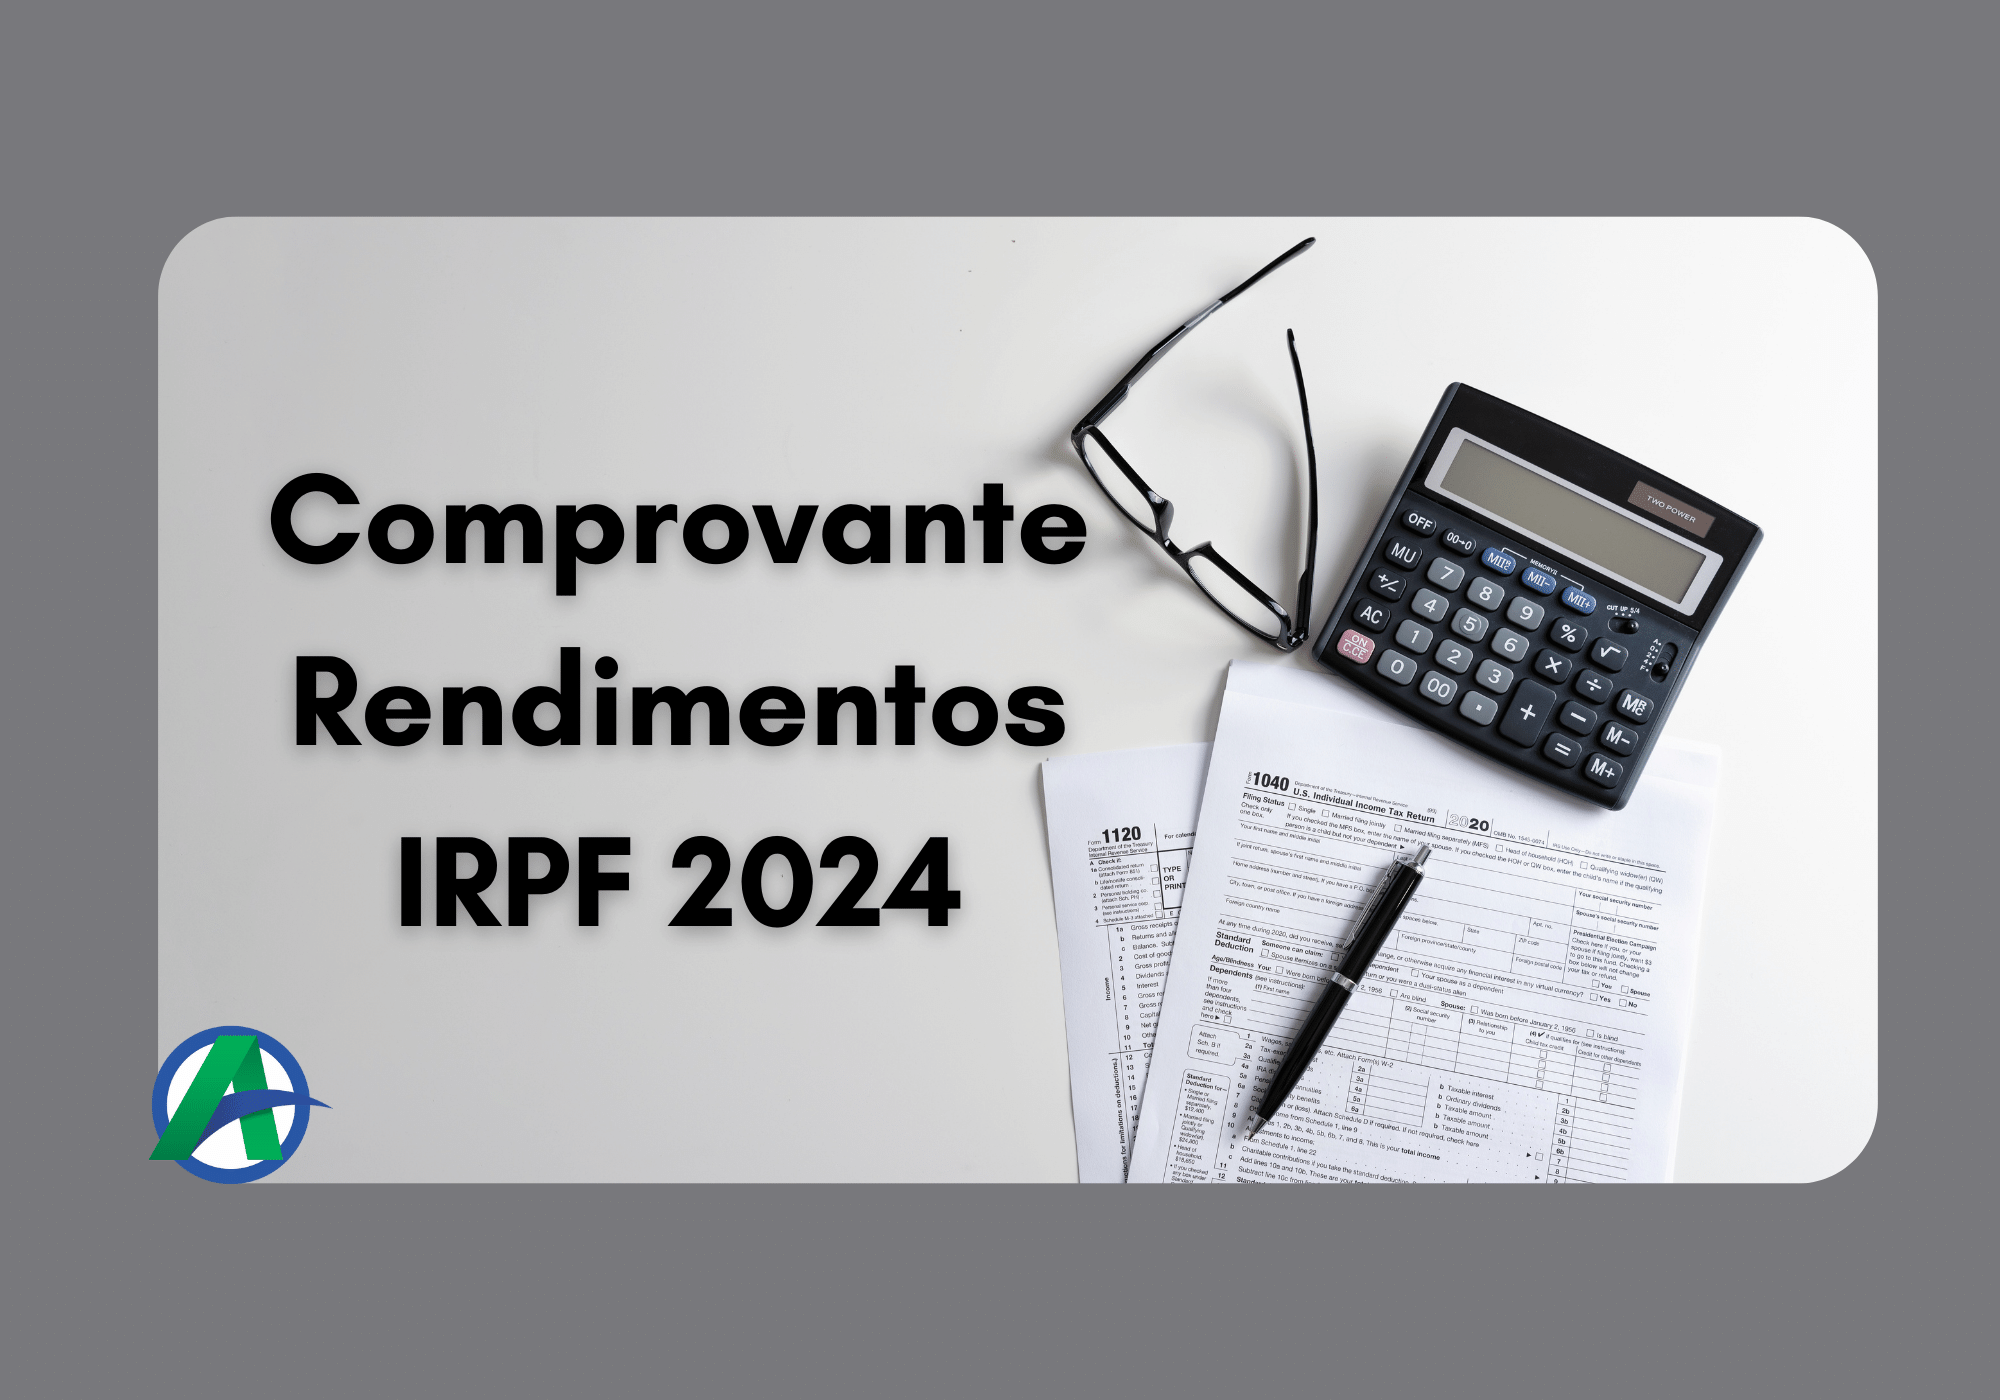 Comprovante de Rendimentos IRPF 2024.